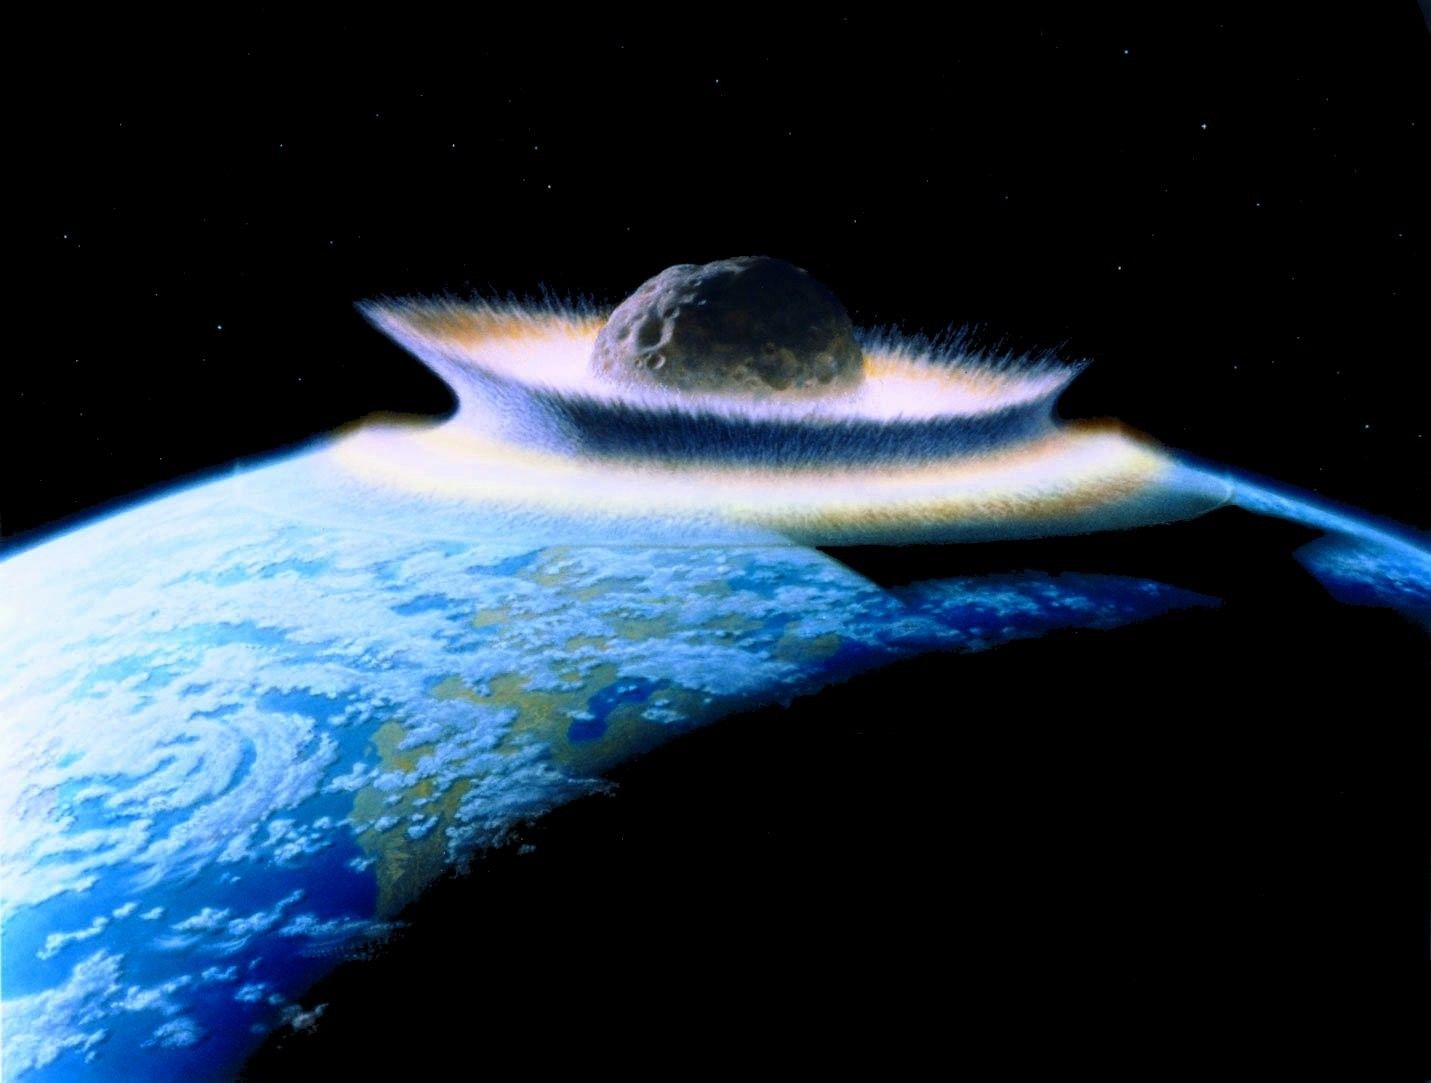 Artystyczna wizja uderzenia planetoidy w Ziemię. Ilustracja: Don Davis via Wikimedia Commons (domena publiczna)